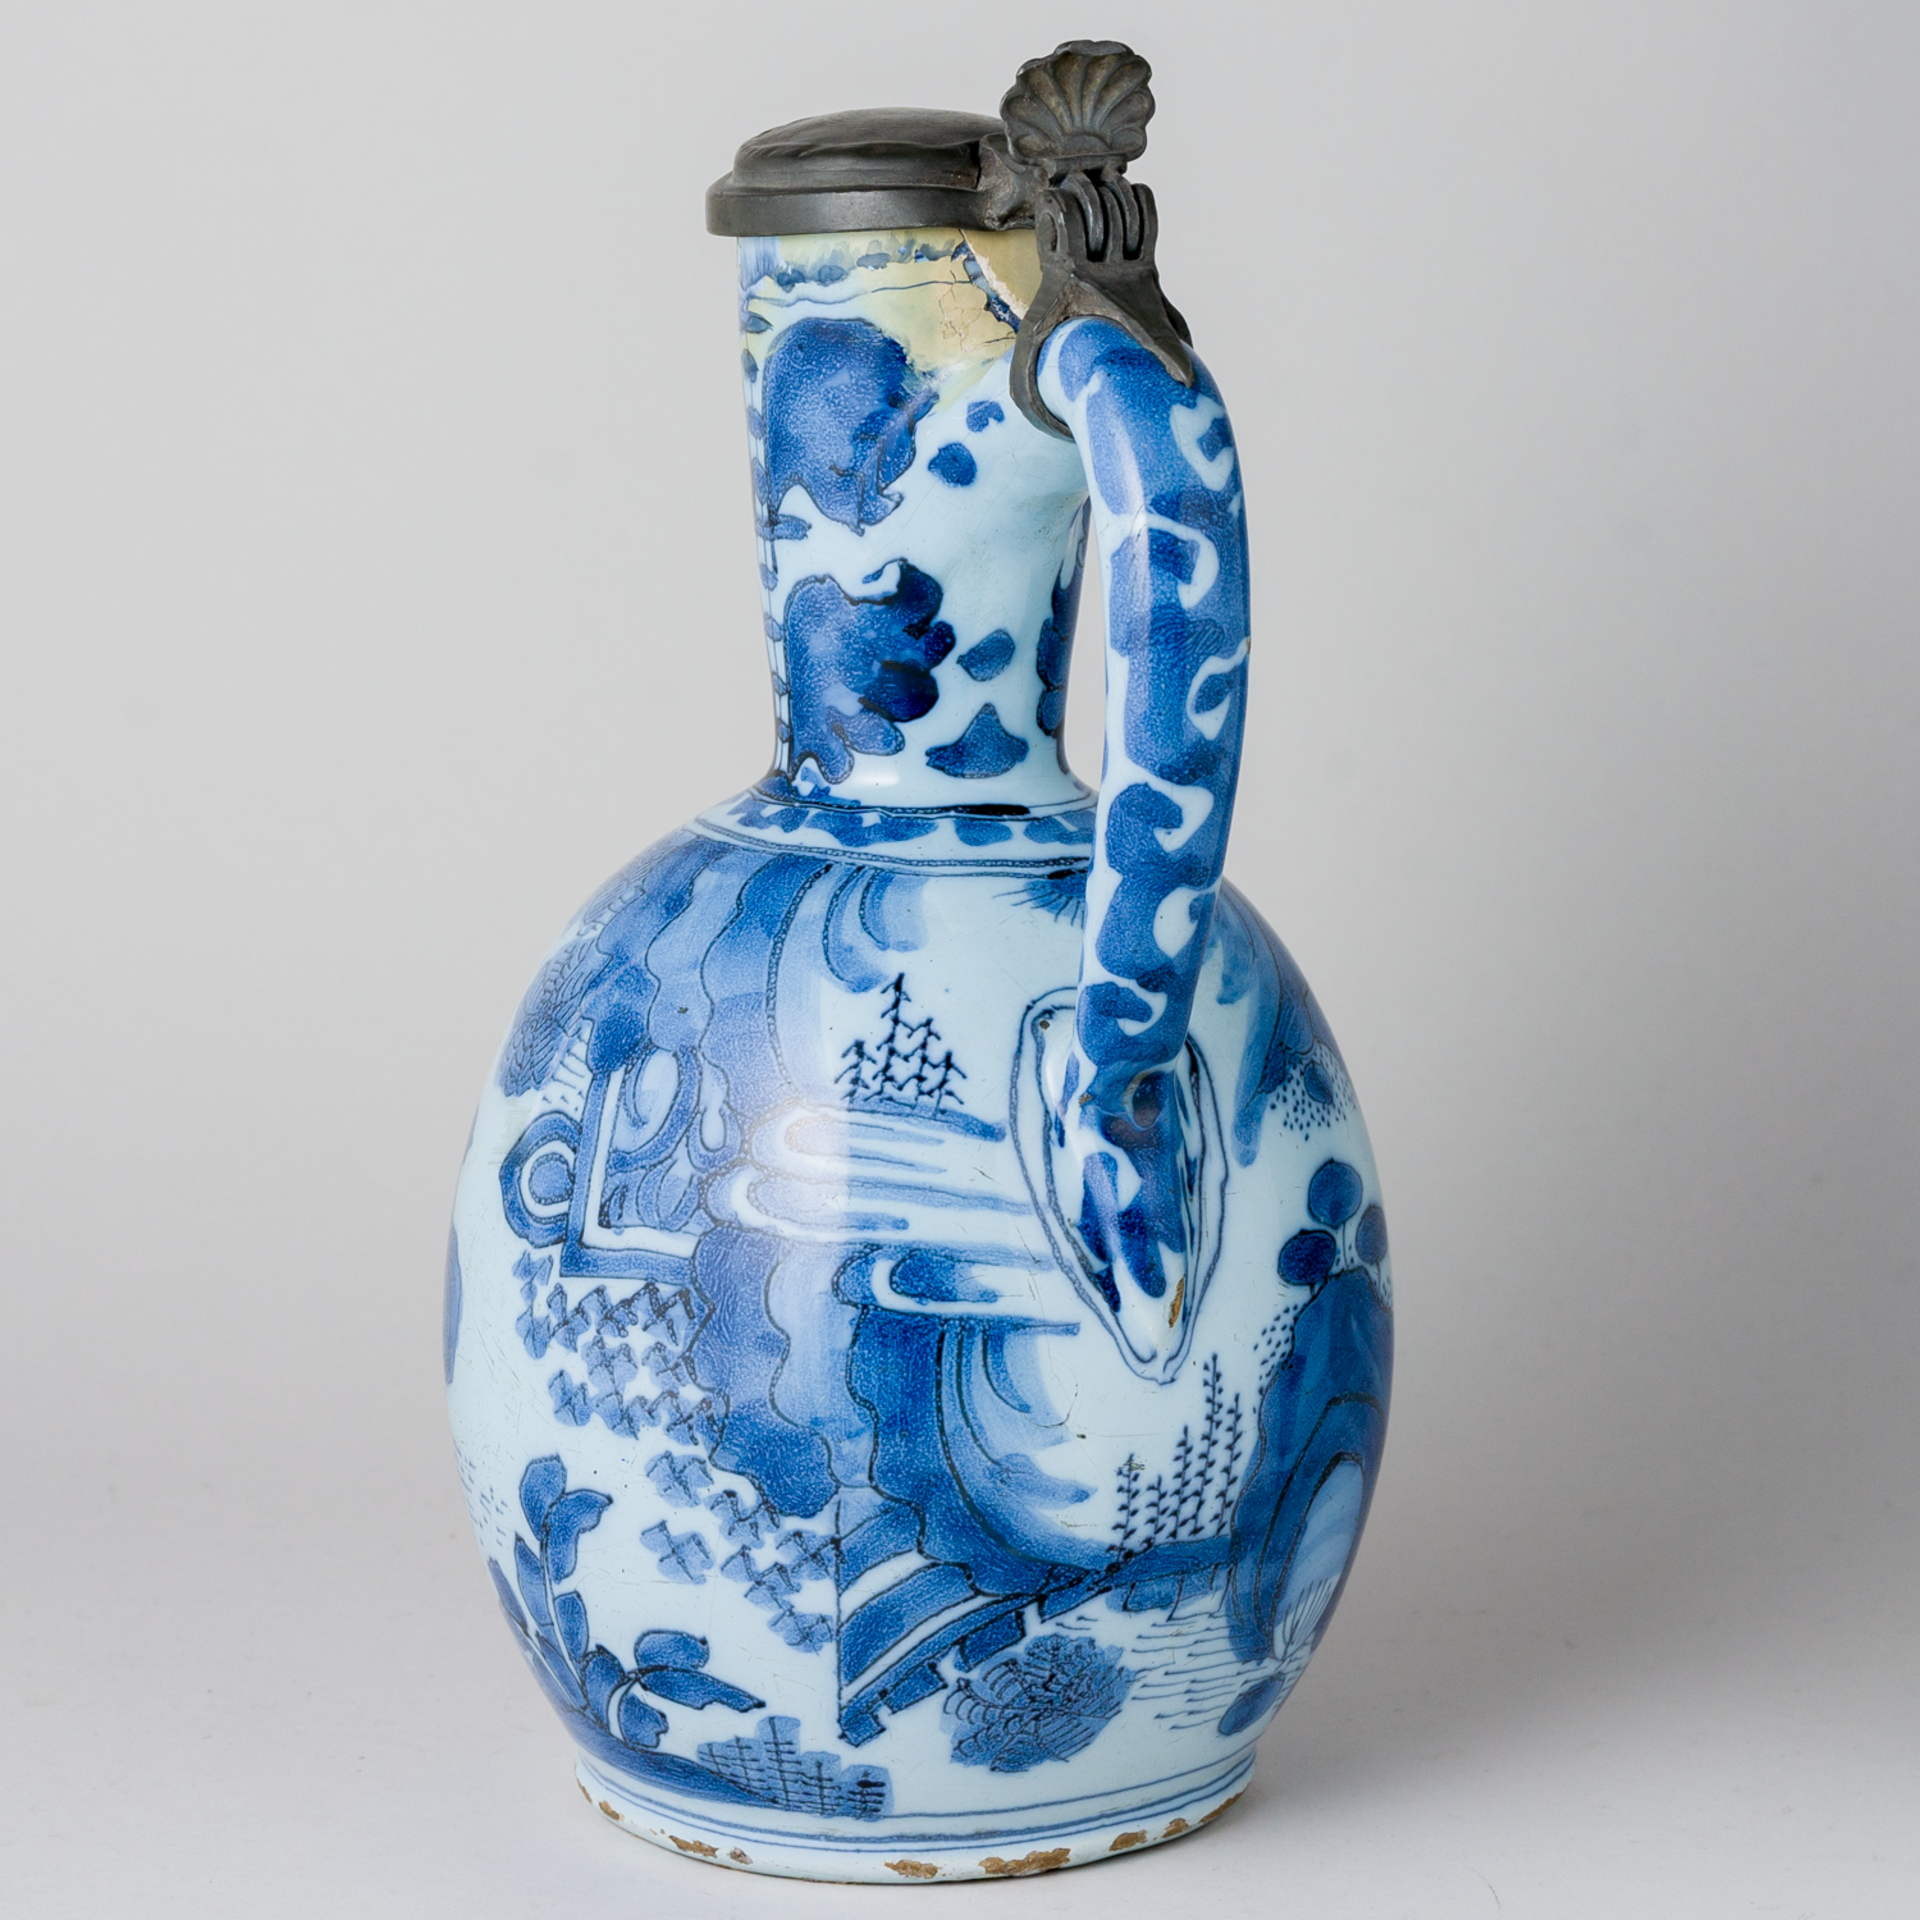 Fayence Delft Krug mit Zinndeckel im Chinesischen Stil  Ende 18. Jhd - Bild 3 aus 12